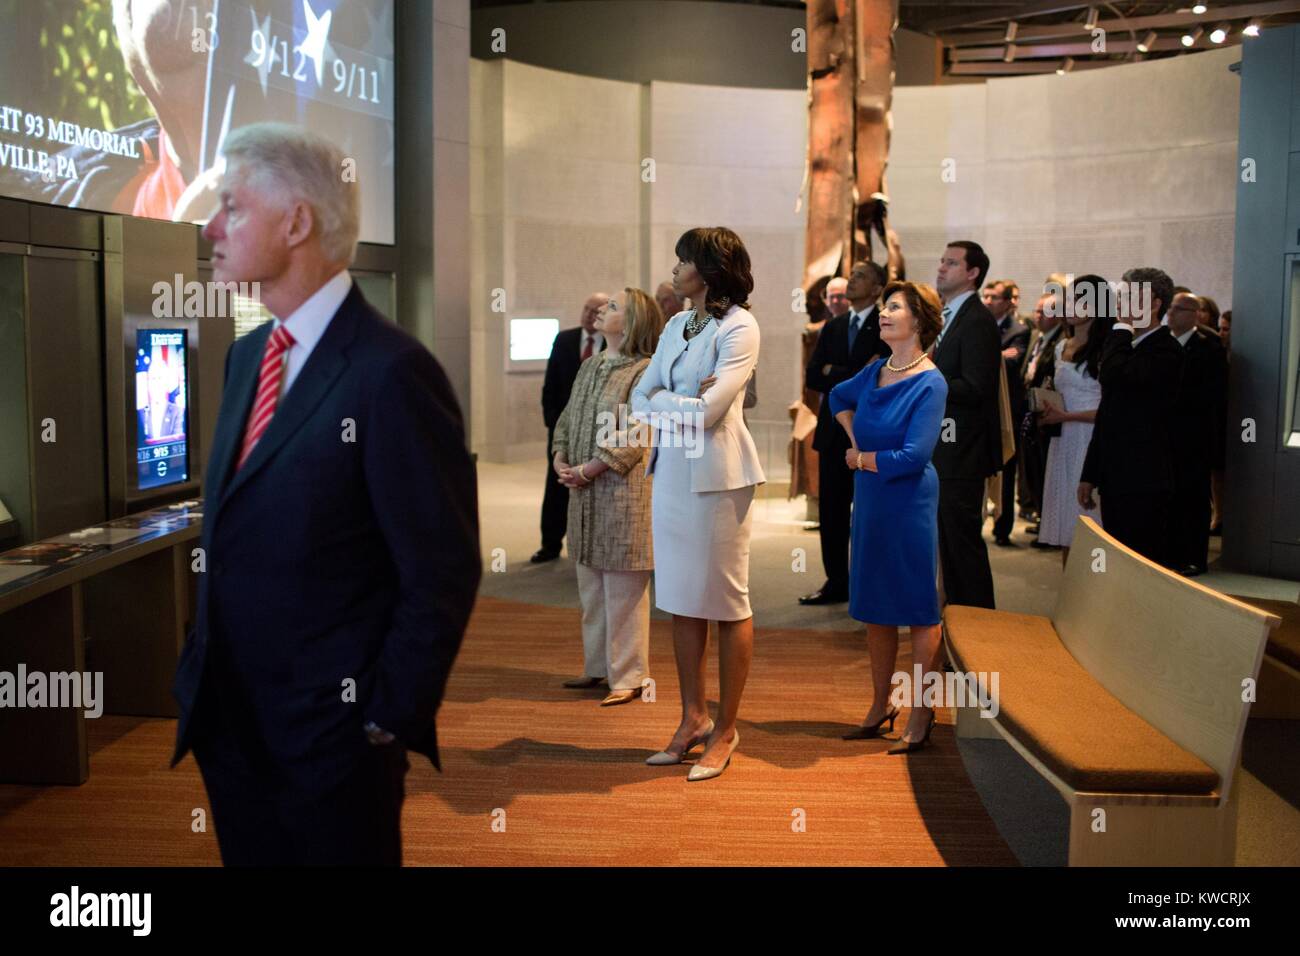 Gegenwärtige und ehemalige erste Damen Blick an einem 9/11 Ausstellung bei George W. Bush Bibliothek. L-R: Bill Clinton, Hillary Rodham Clinton, Michelle Obama, Barack Obama, Laura Bush. April 25, 2013. (BSLOC 2015 3 55) Stockfoto